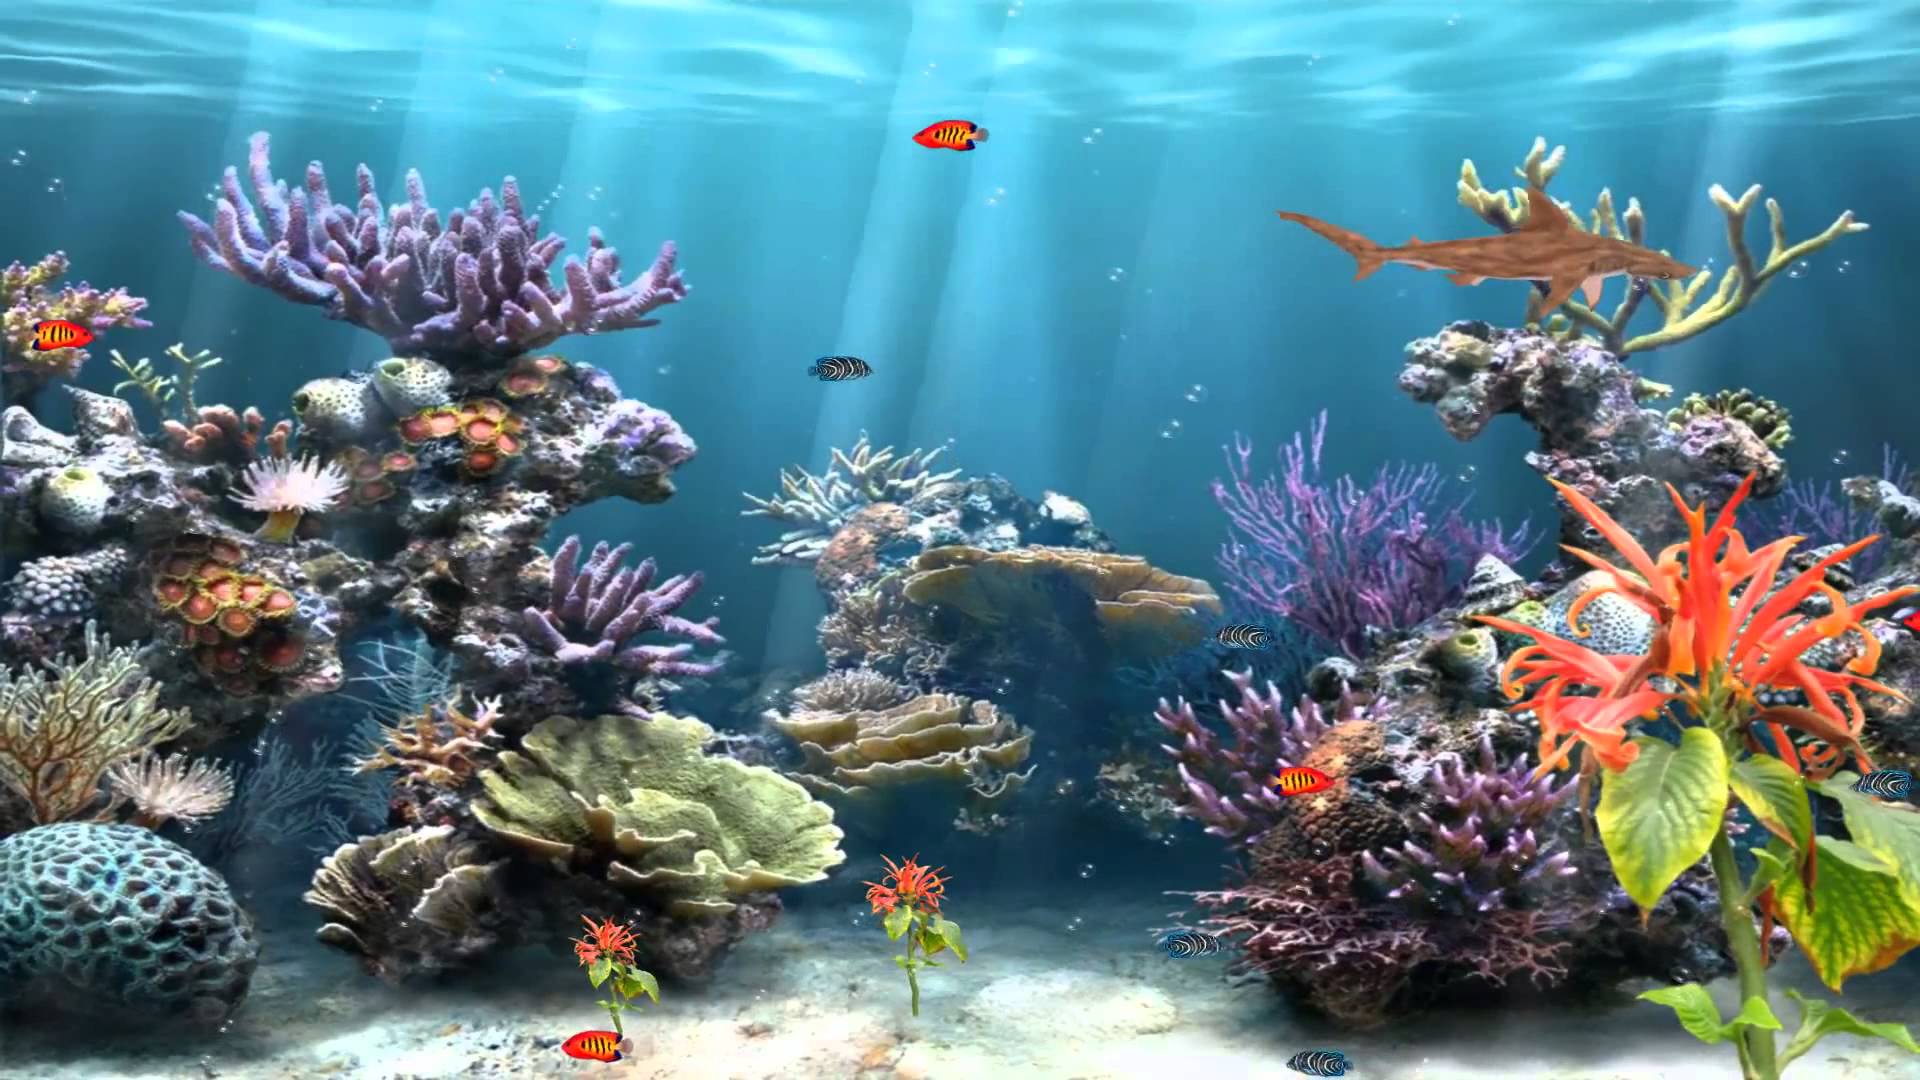 Animated Coral Reef Wallpaper Wallpapersafari